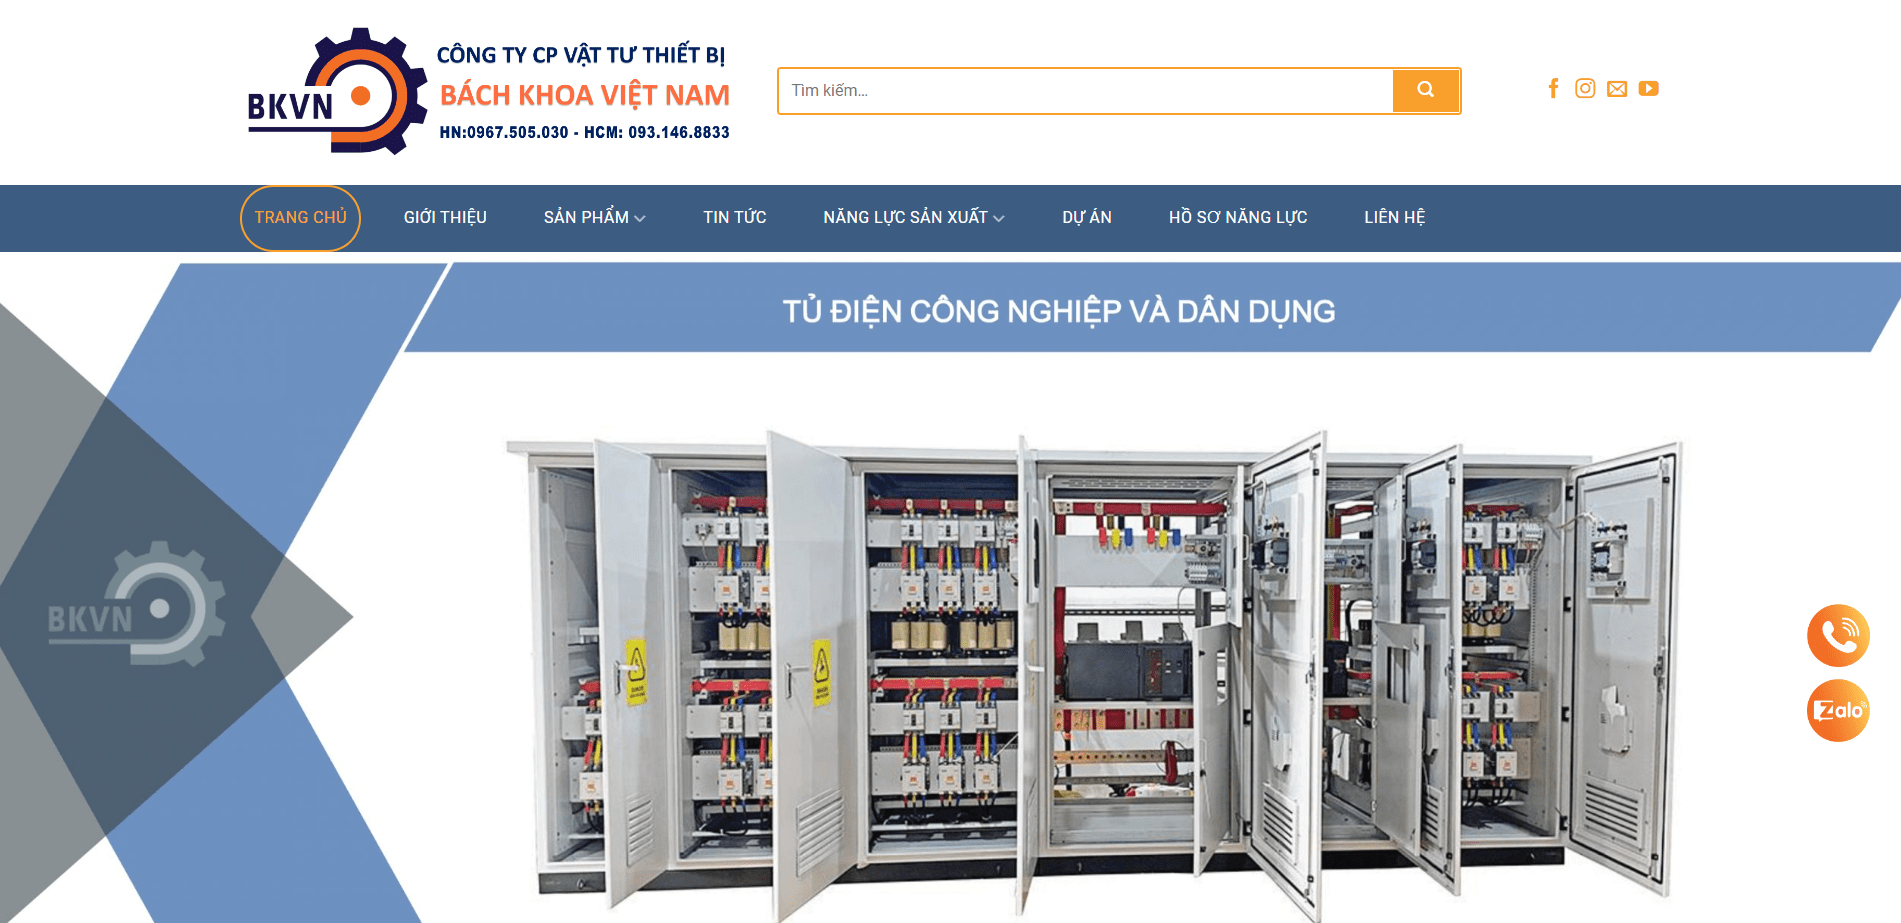 Bách Khoa Việt Nam - Đơn vị chuyên cung cấp các giải pháp về tủ điện